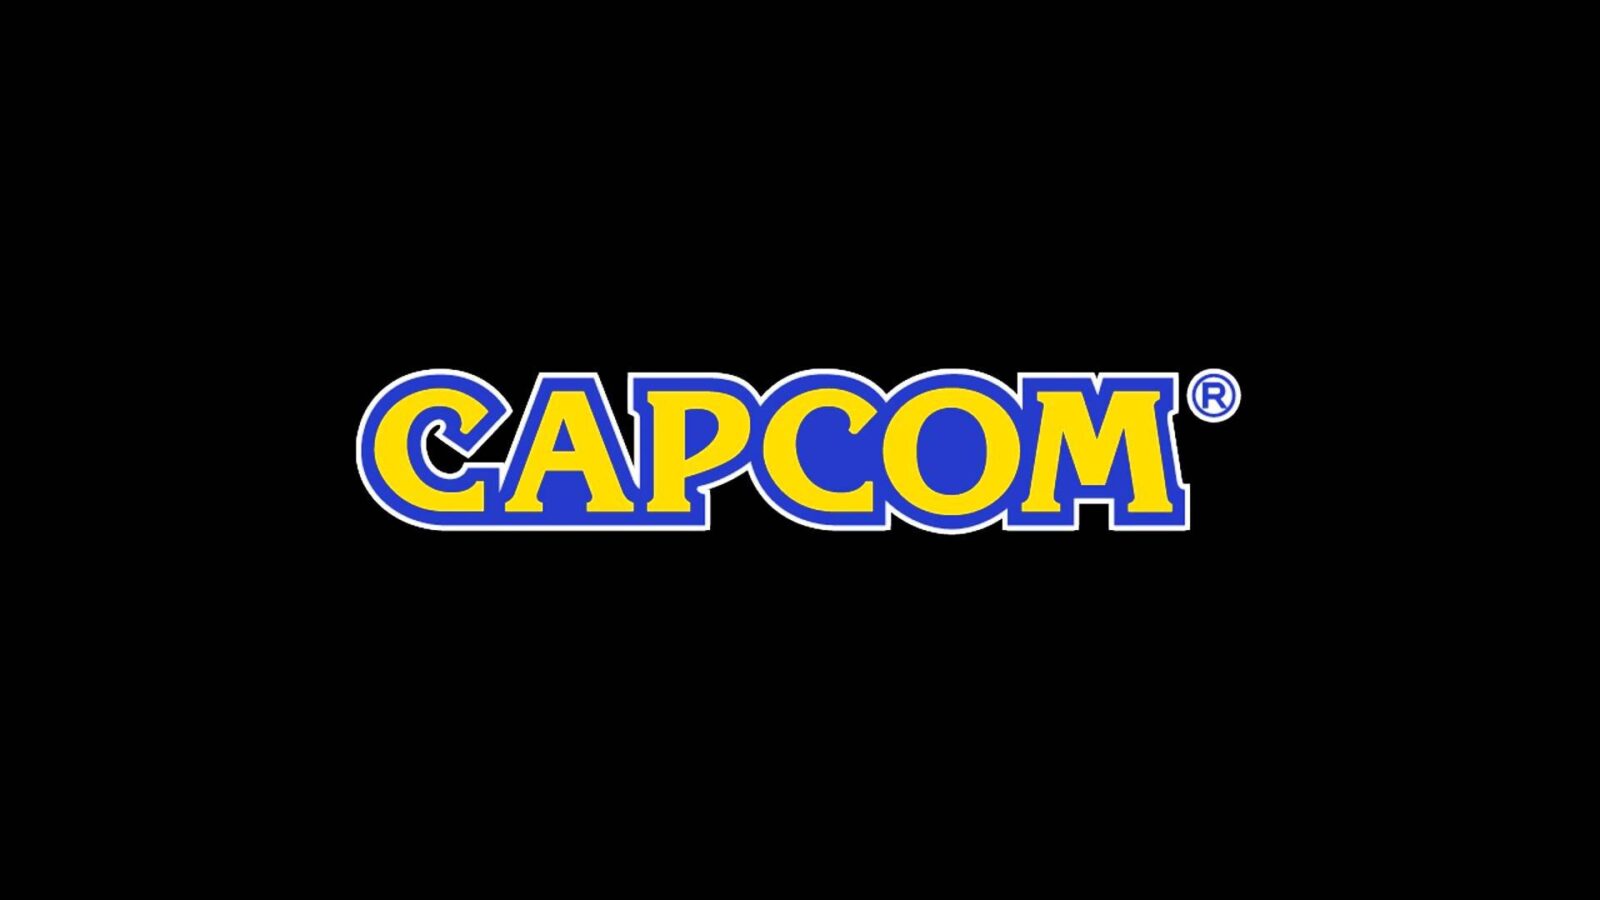 Presidente da Capcom afirma que 'preços de jogos estão muito baixos'